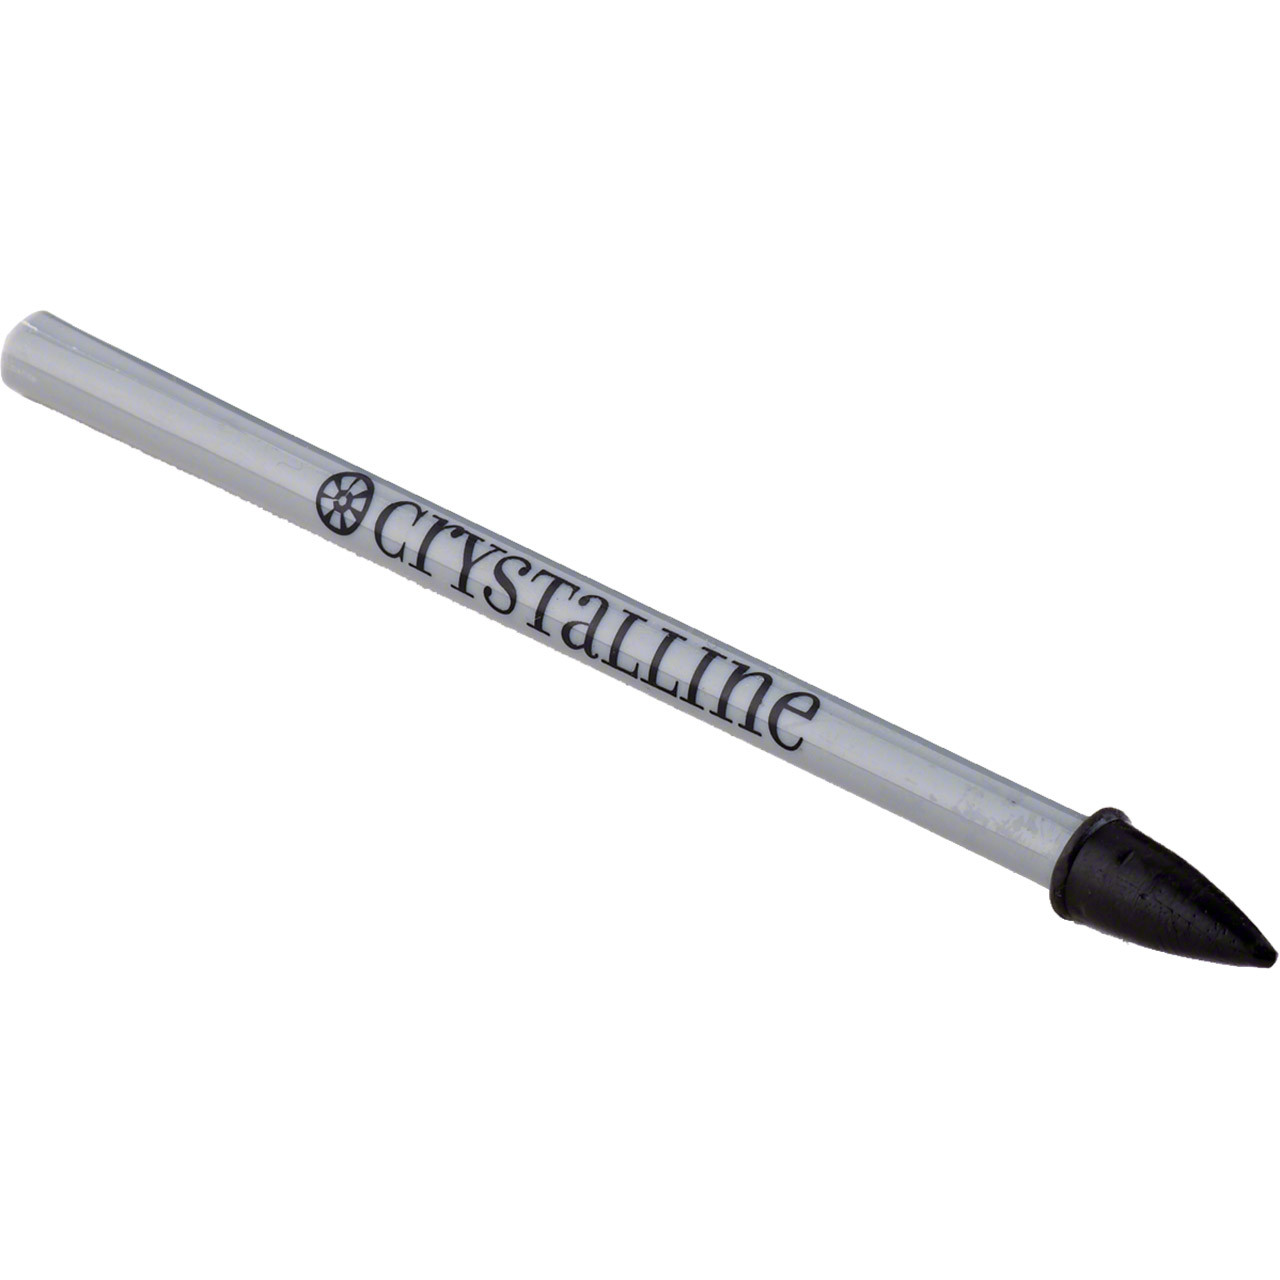 Crystalline Pick-Me-Up Classic Wax Tool Rhinestone Tools and Glues -  Rhinestones Unlimited